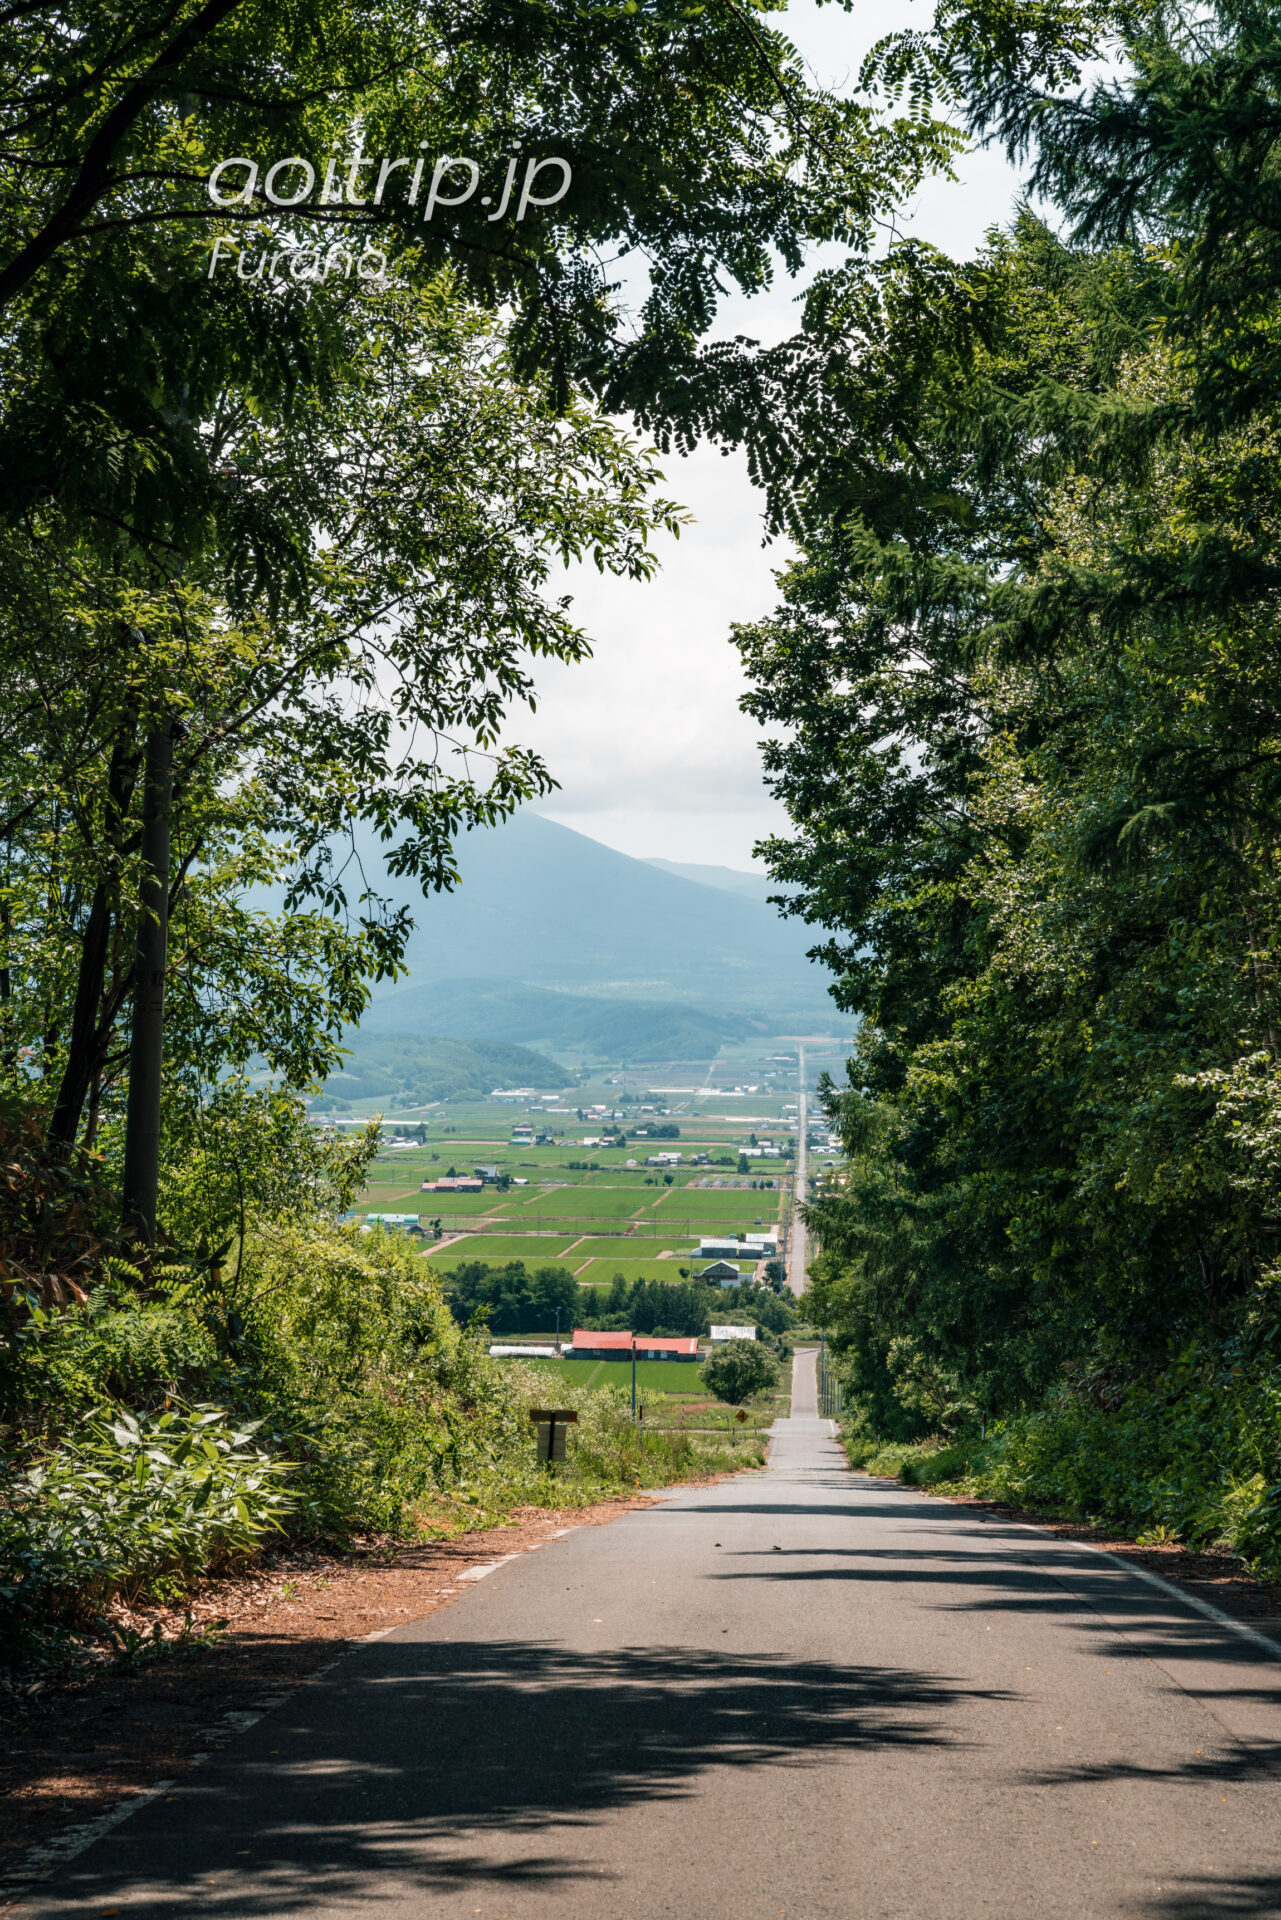 パノラマロード江花 上富良野 Panorama Road Ehana, Kamifurano